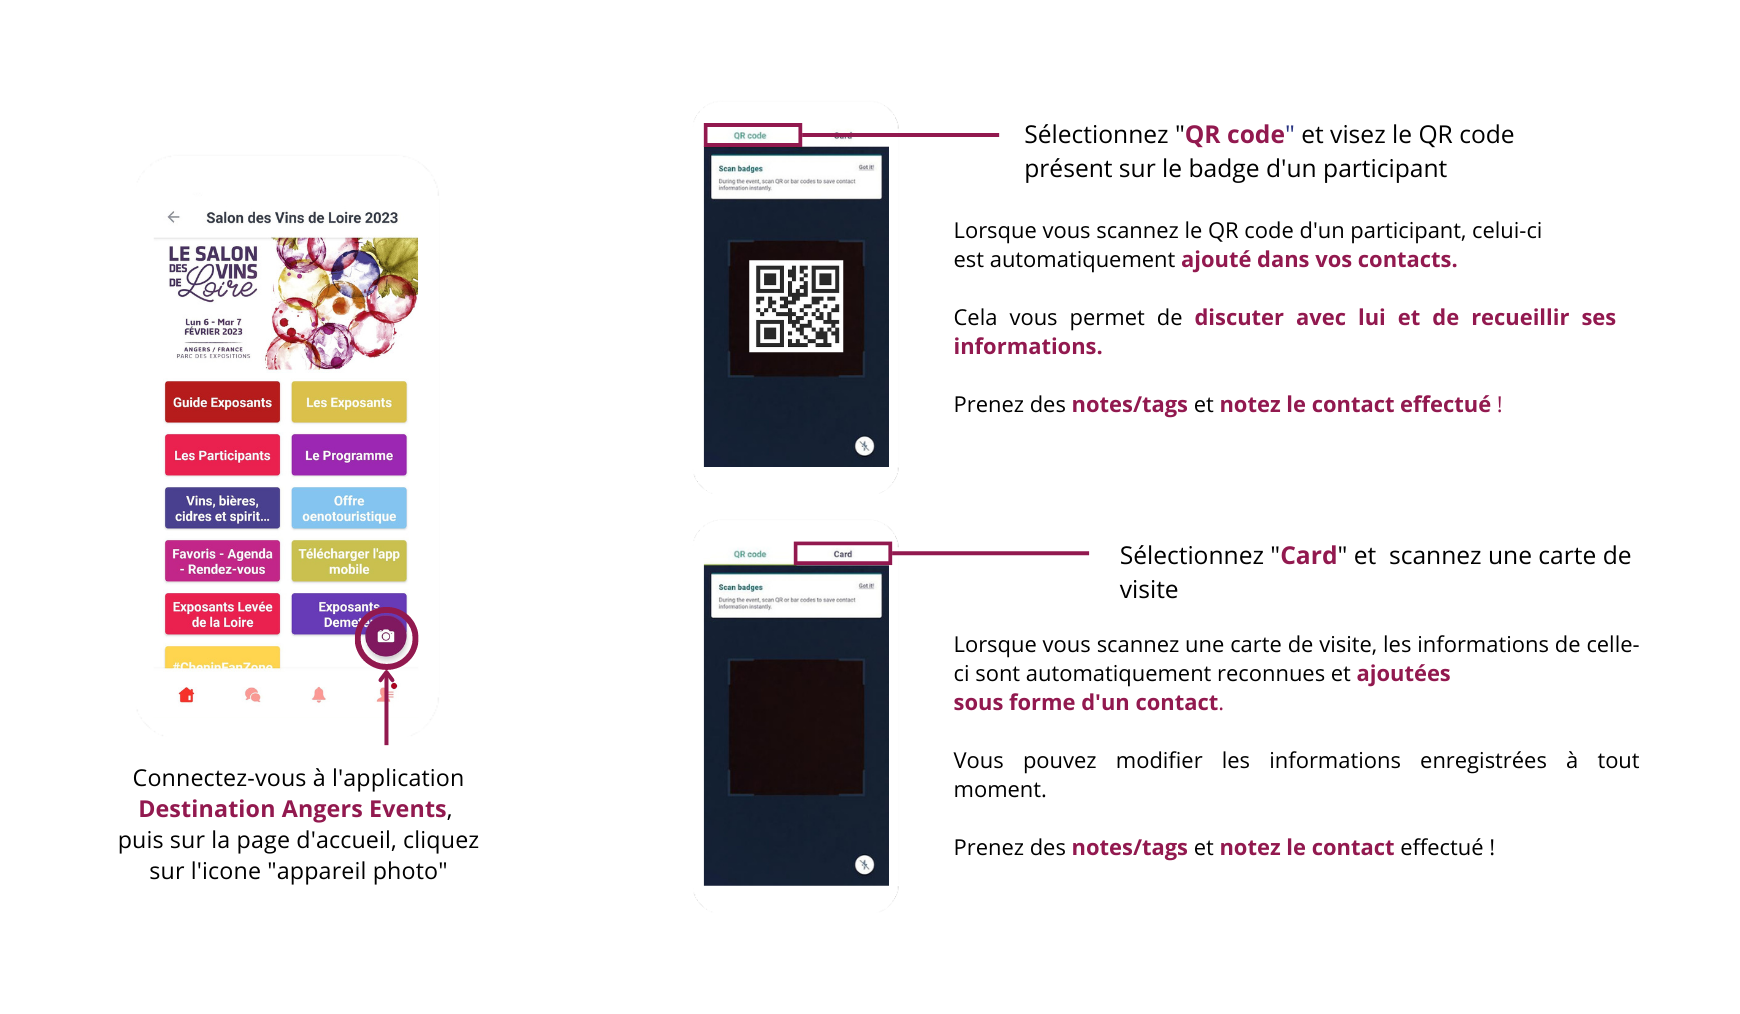 La fonctionnalité scan de badge est un outil vous permettant très simplement, en scannant le QR CODE d'un badge ou une carte de visite, d'ajouter des contacts avec ses informations sur